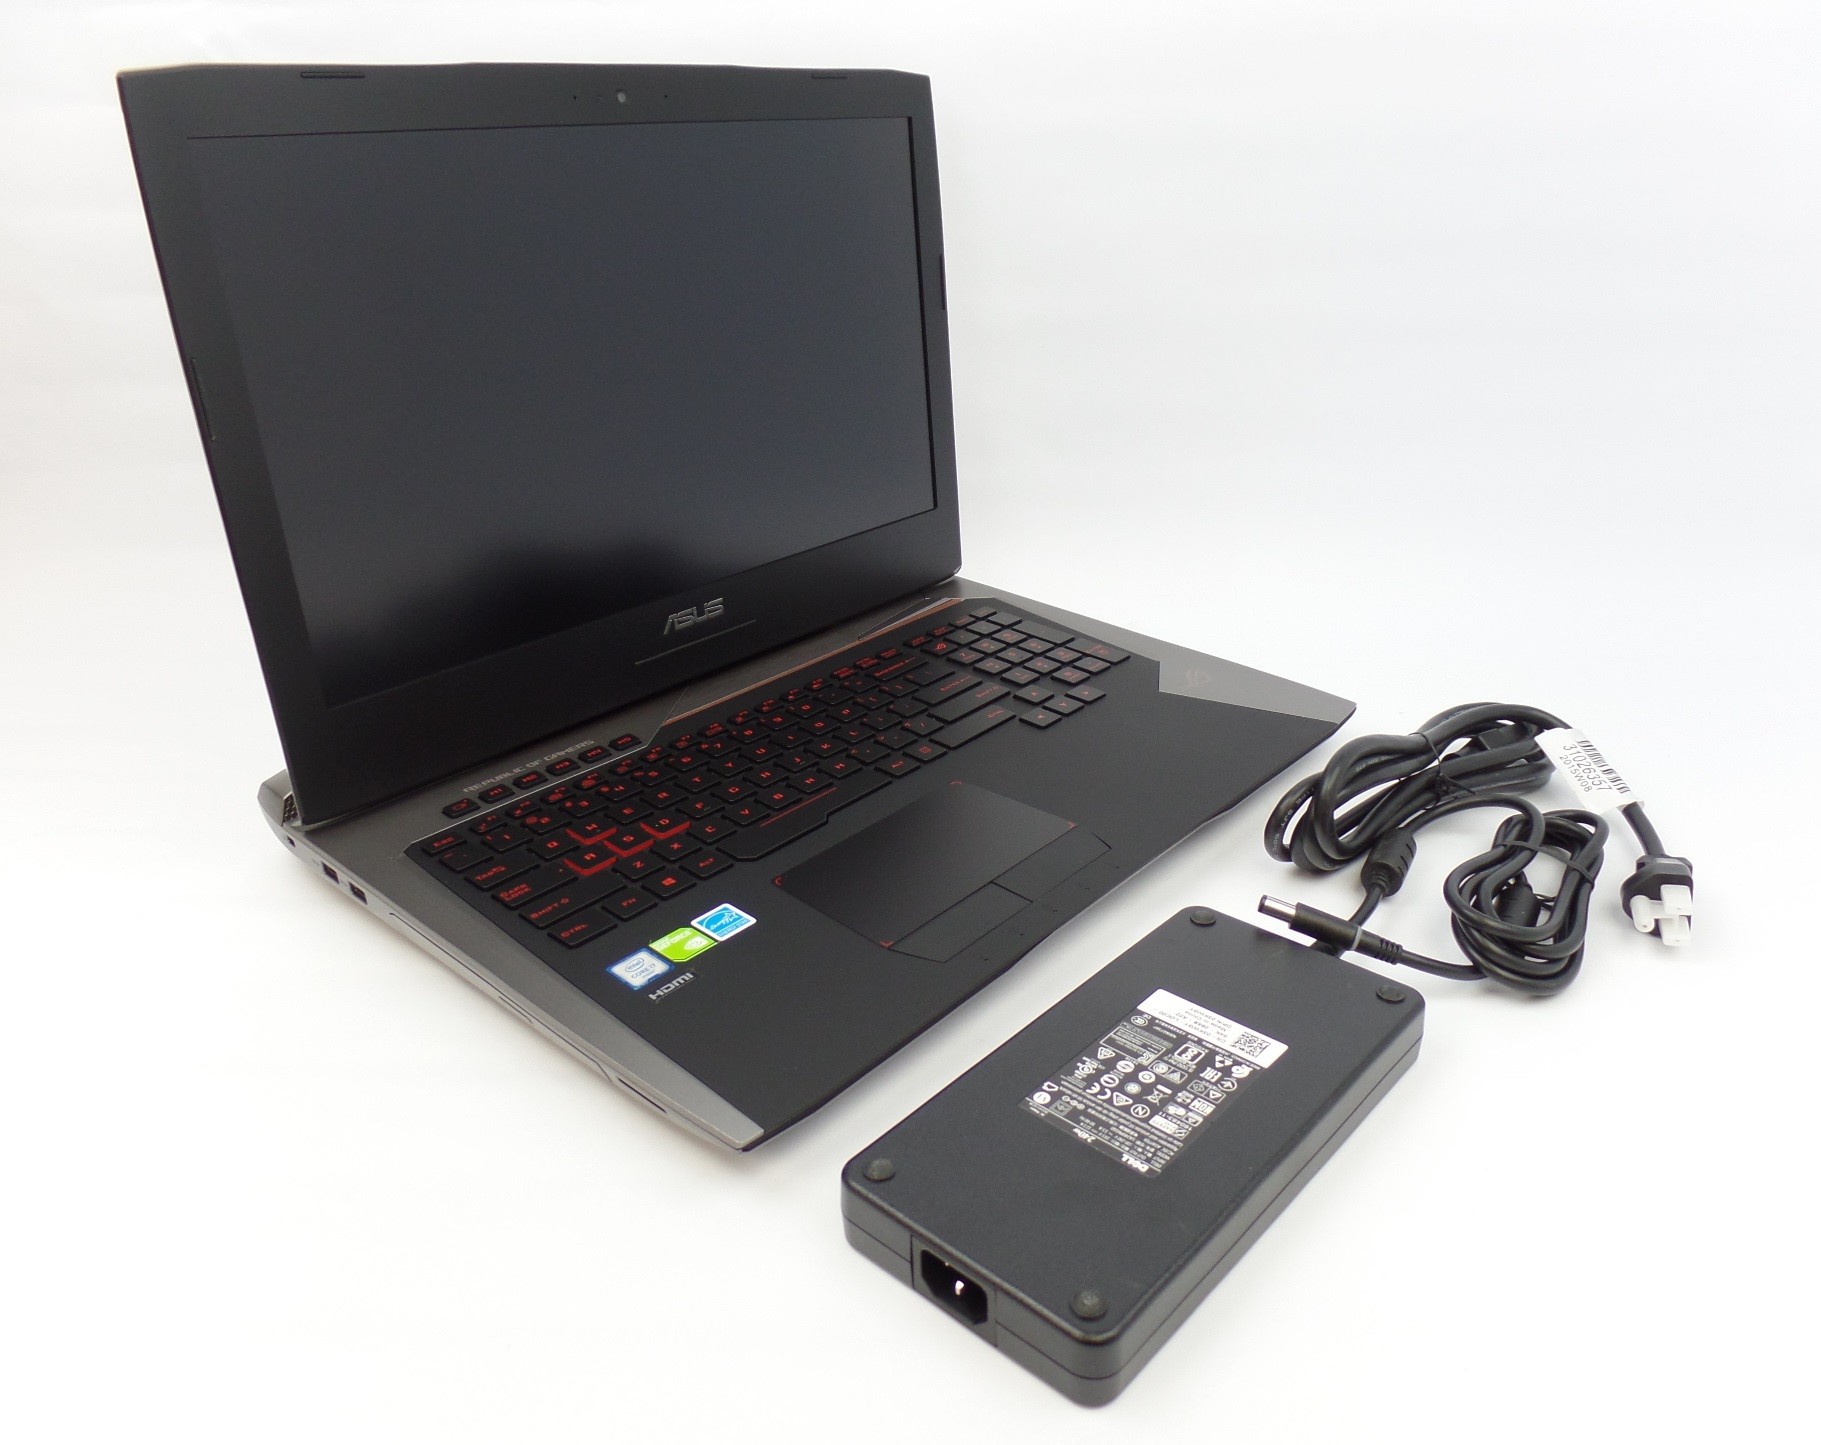 Asus ROG G752VS 17.3" FHD i7-6820HK 2.7GHz 64GB 1TB GTX 1070 W10 Gaming Laptop